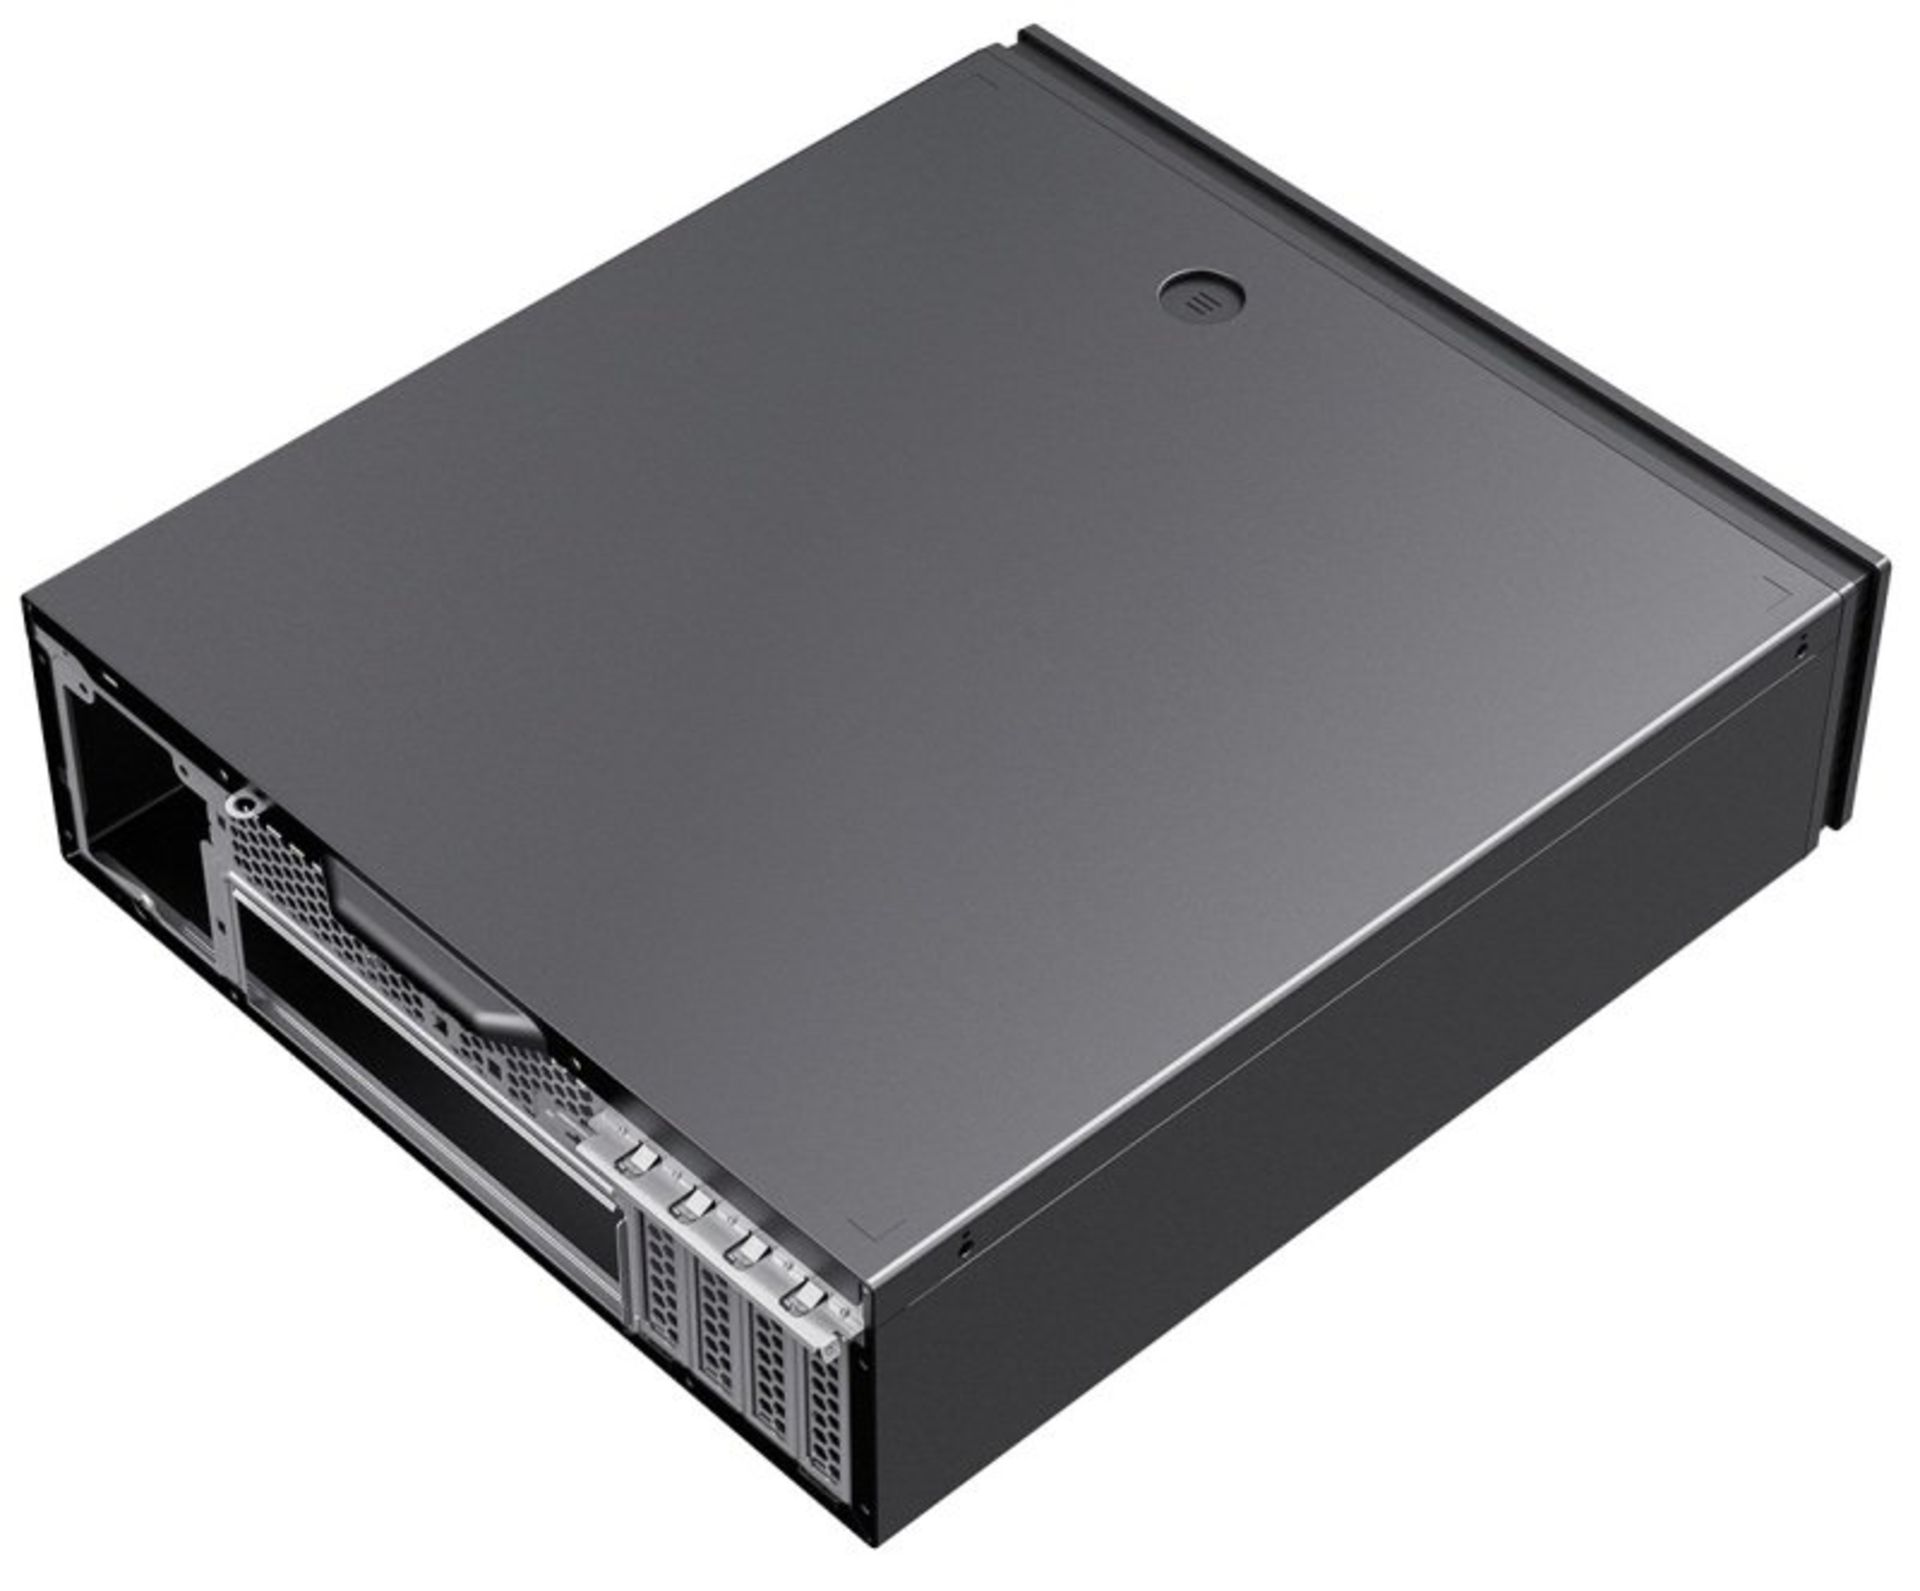 3x NEW & BOXED CIT S506 Micro ATX Desktop Case - BLACK. RRP £44.99 EACH. (PCK). The CiT S506 slim - Image 7 of 10